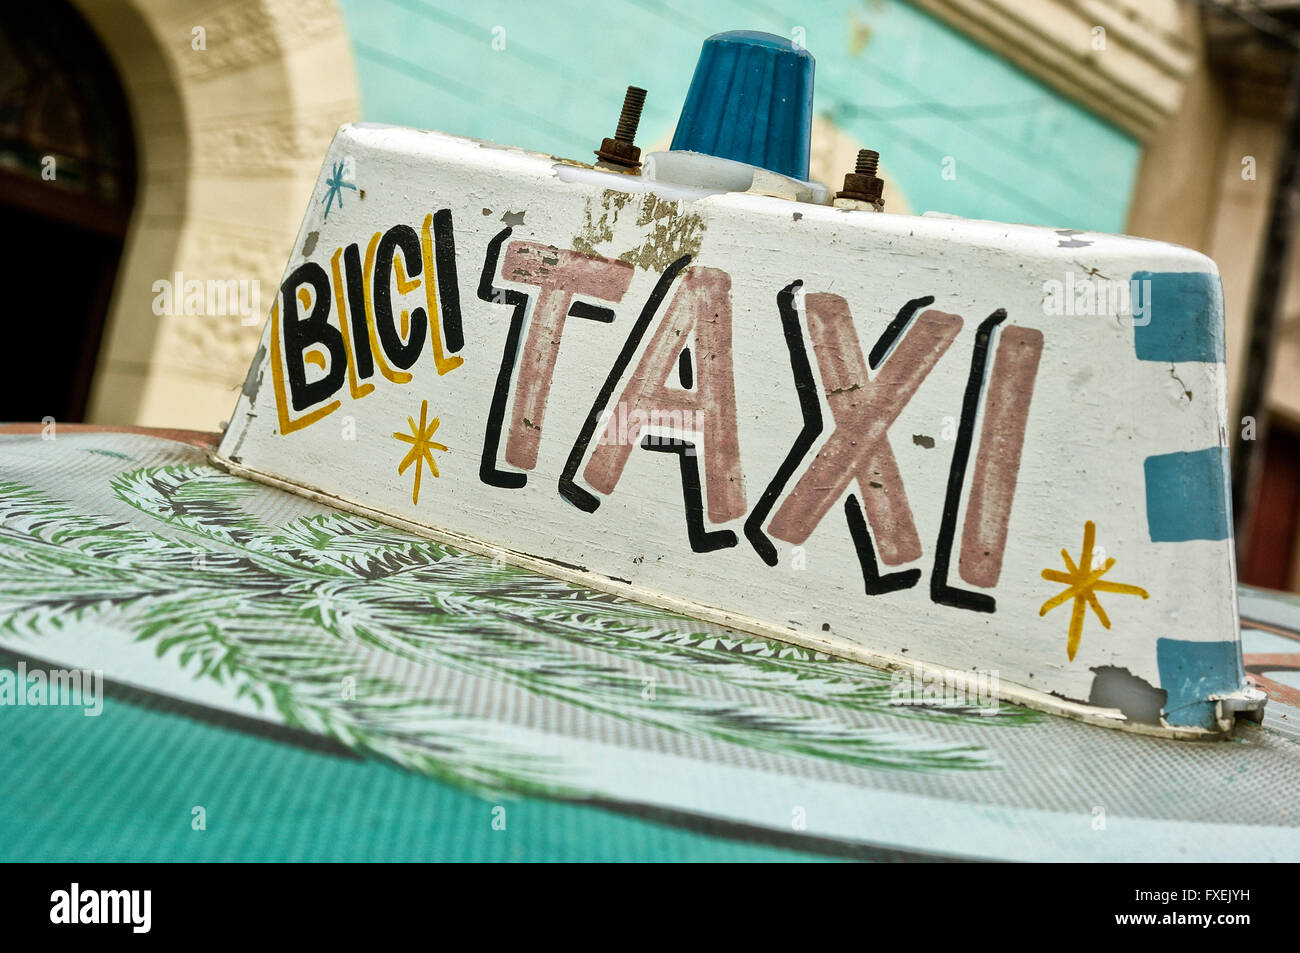 Bici taxi cab roof sign. Cuba Stock Photo